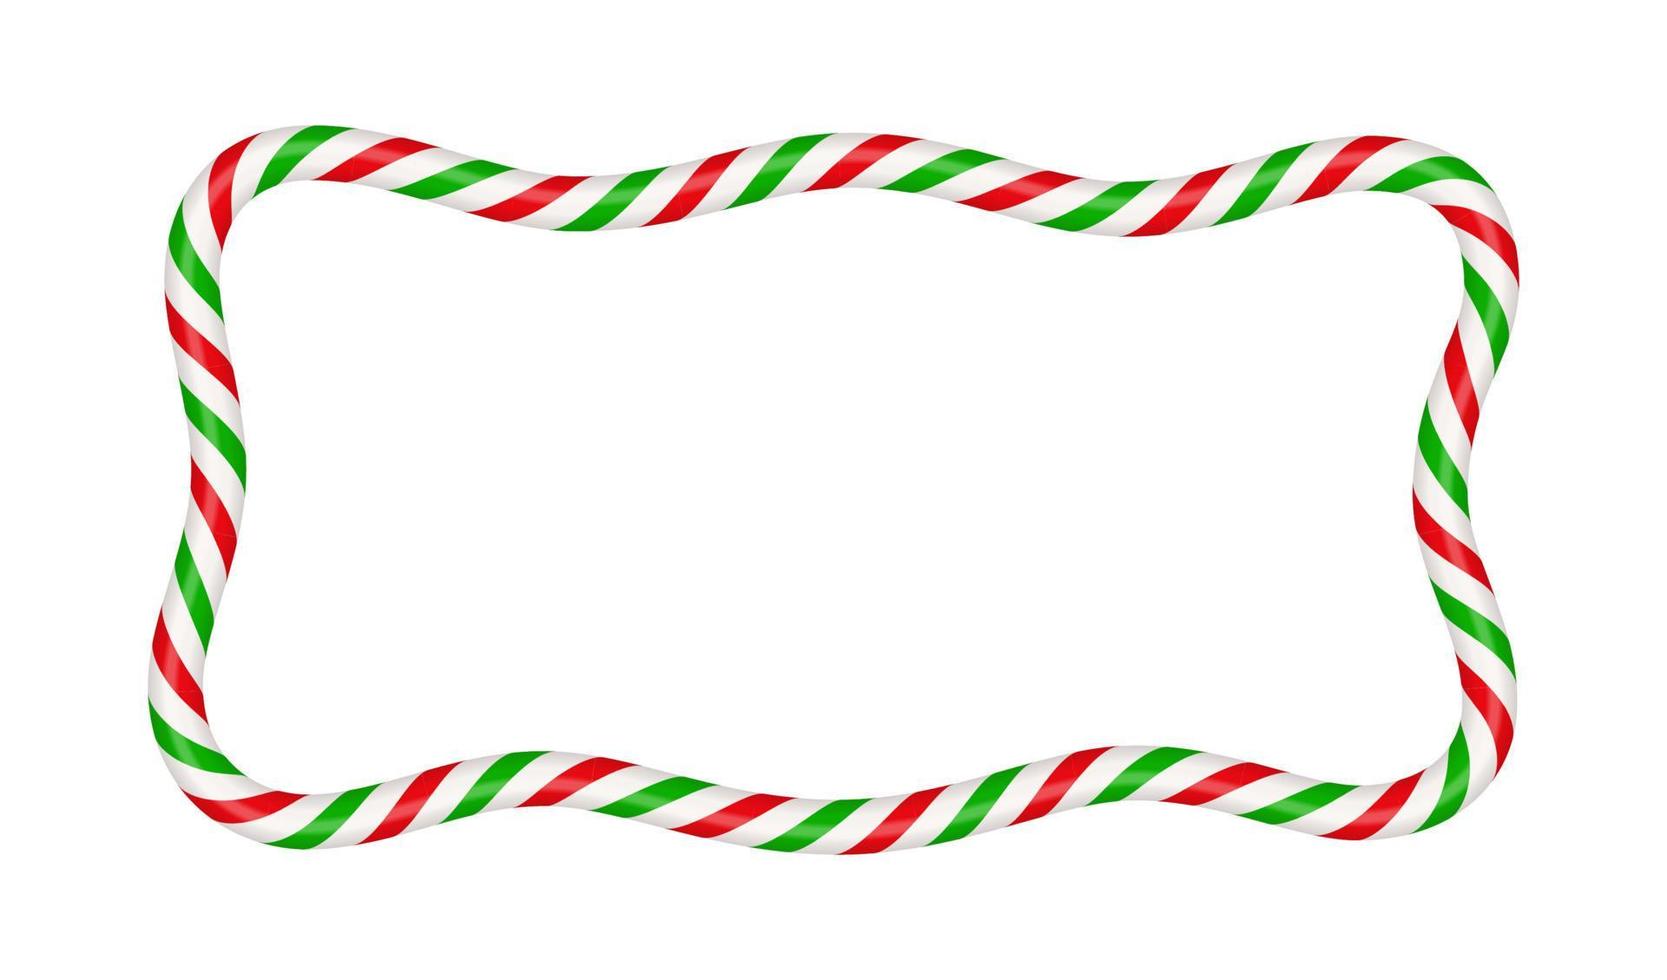 marco rectangular de bastón de caramelo de navidad con rayas rojas y verdes. borde de navidad con patrón de piruleta de caramelo a rayas. plantilla de navidad y año nuevo en blanco. ilustración vectorial aislar sobre fondo blanco vector